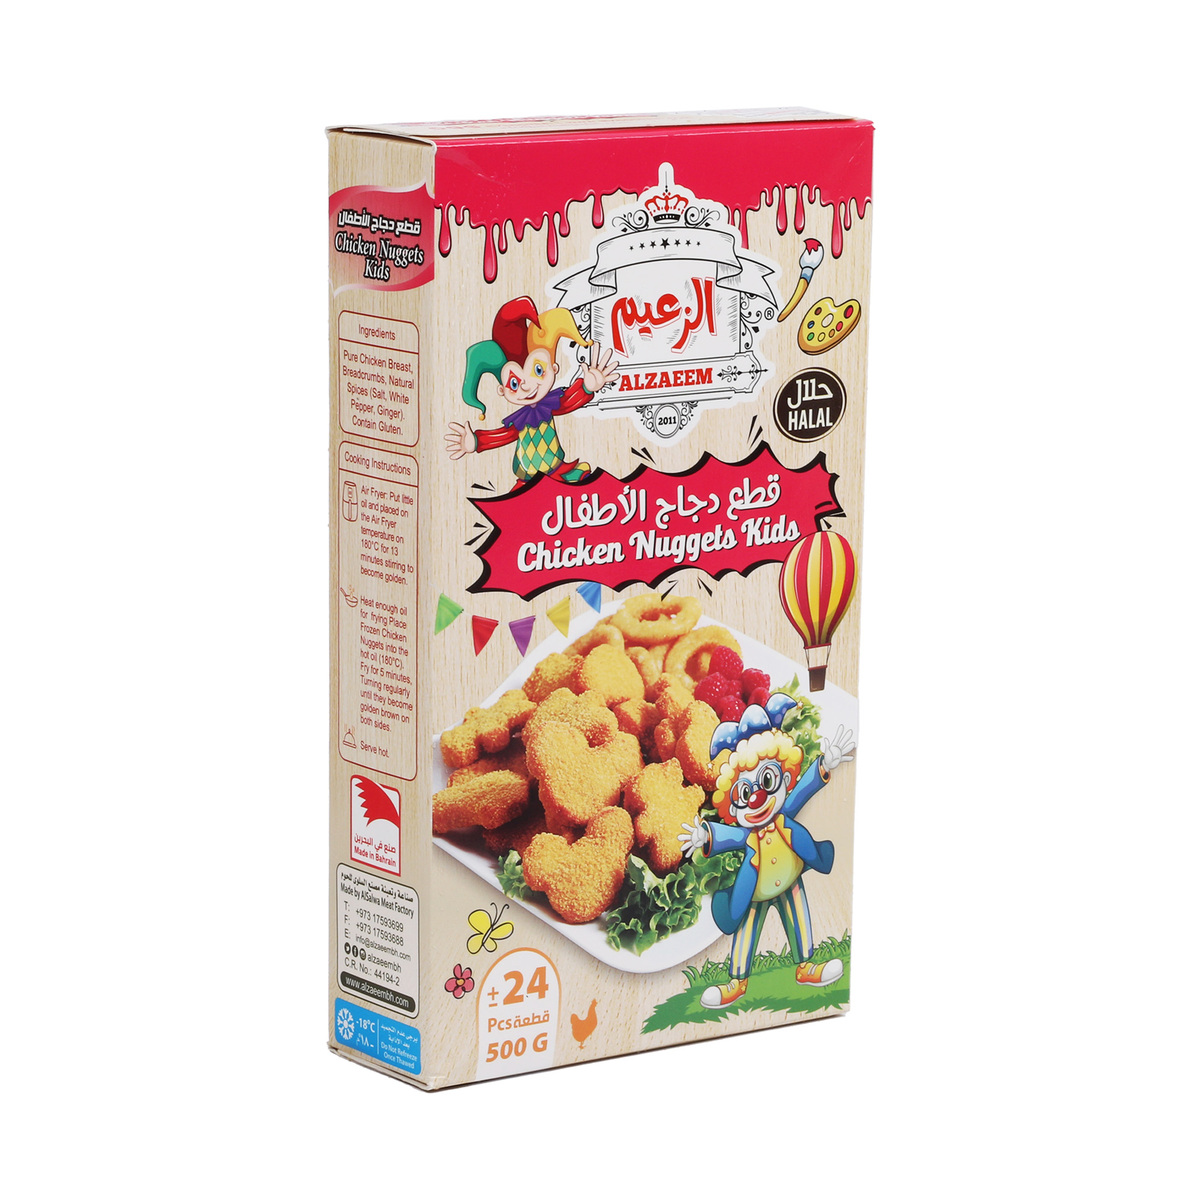 Al Zaeem Kids Chicken Nuggets 2 x 500g